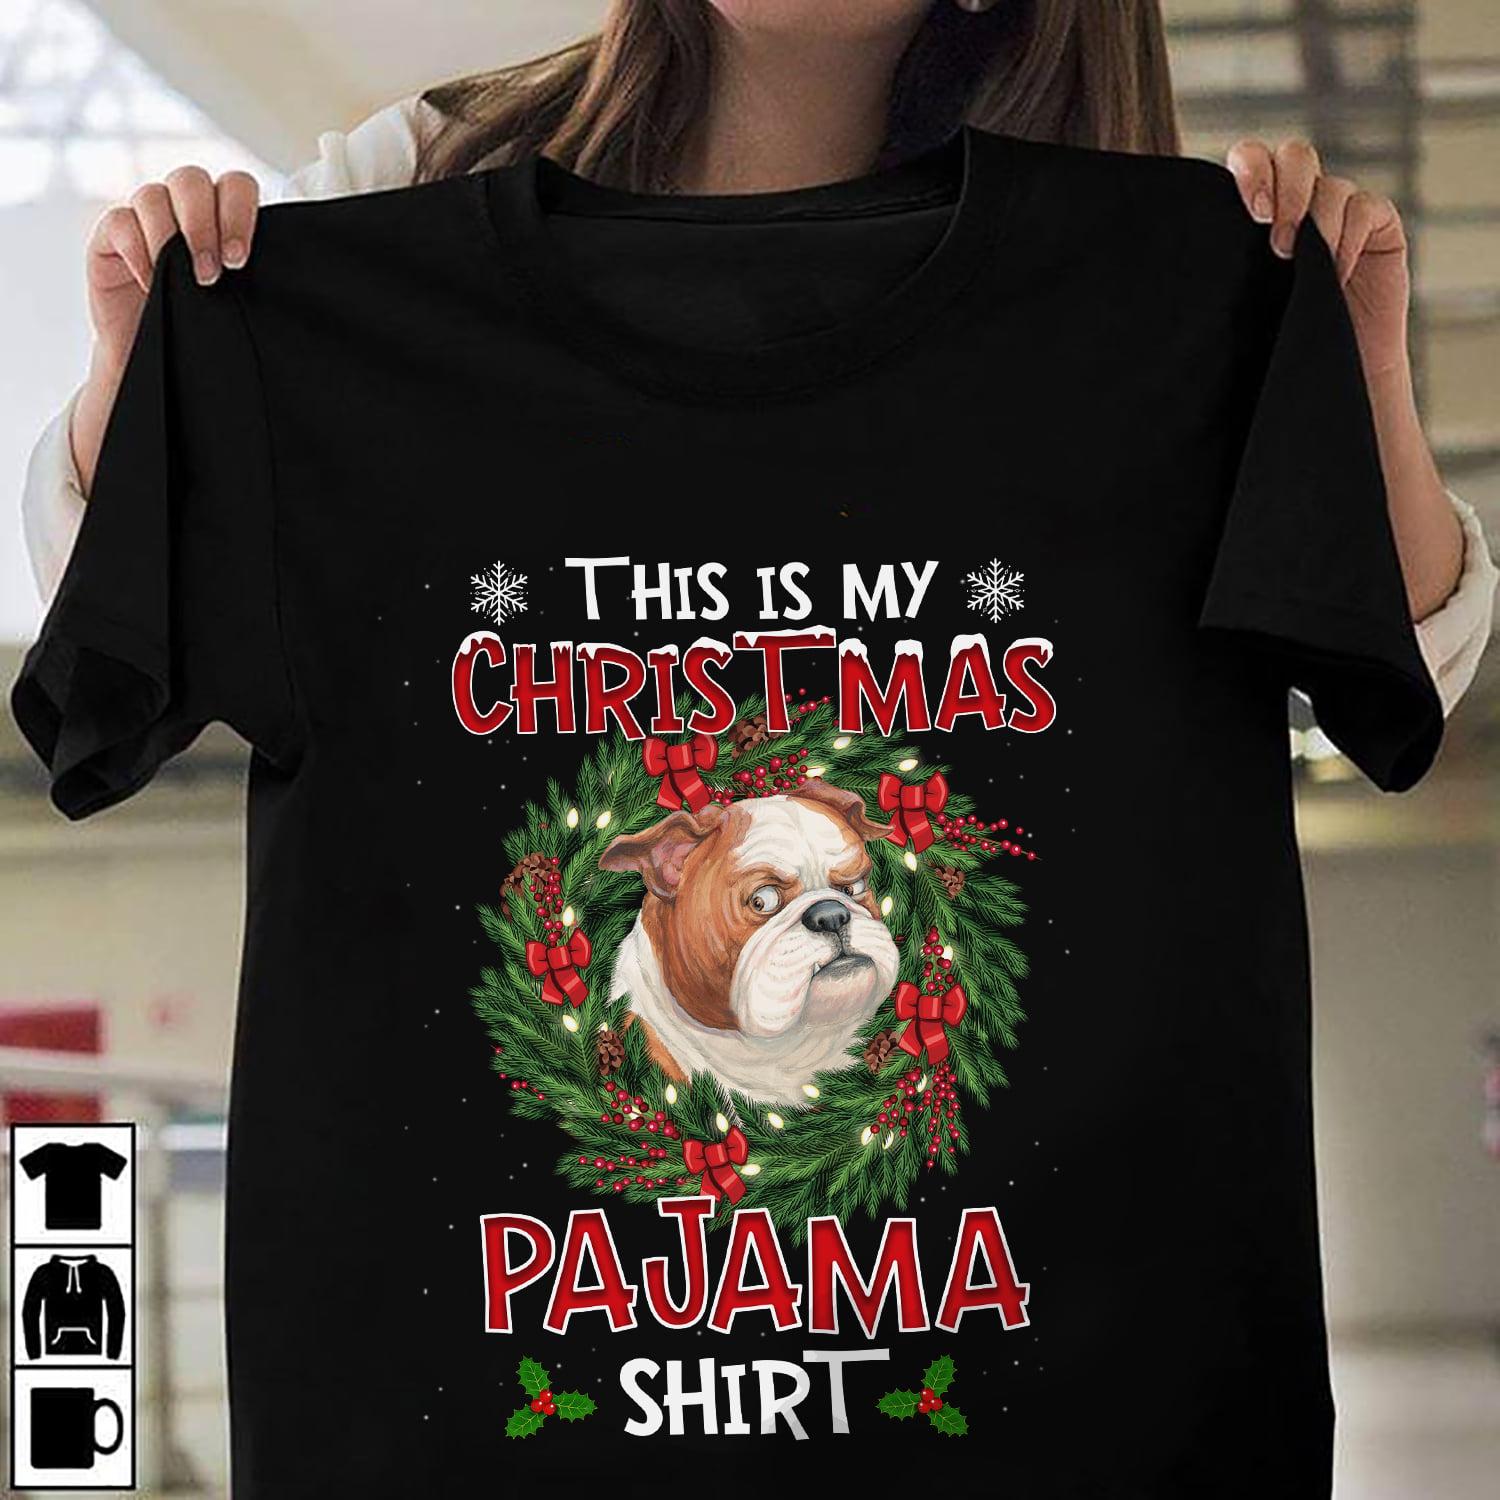 This is my Christmas pajama shirt - Christmas ugly sweater, Bulldog Christmas decoration